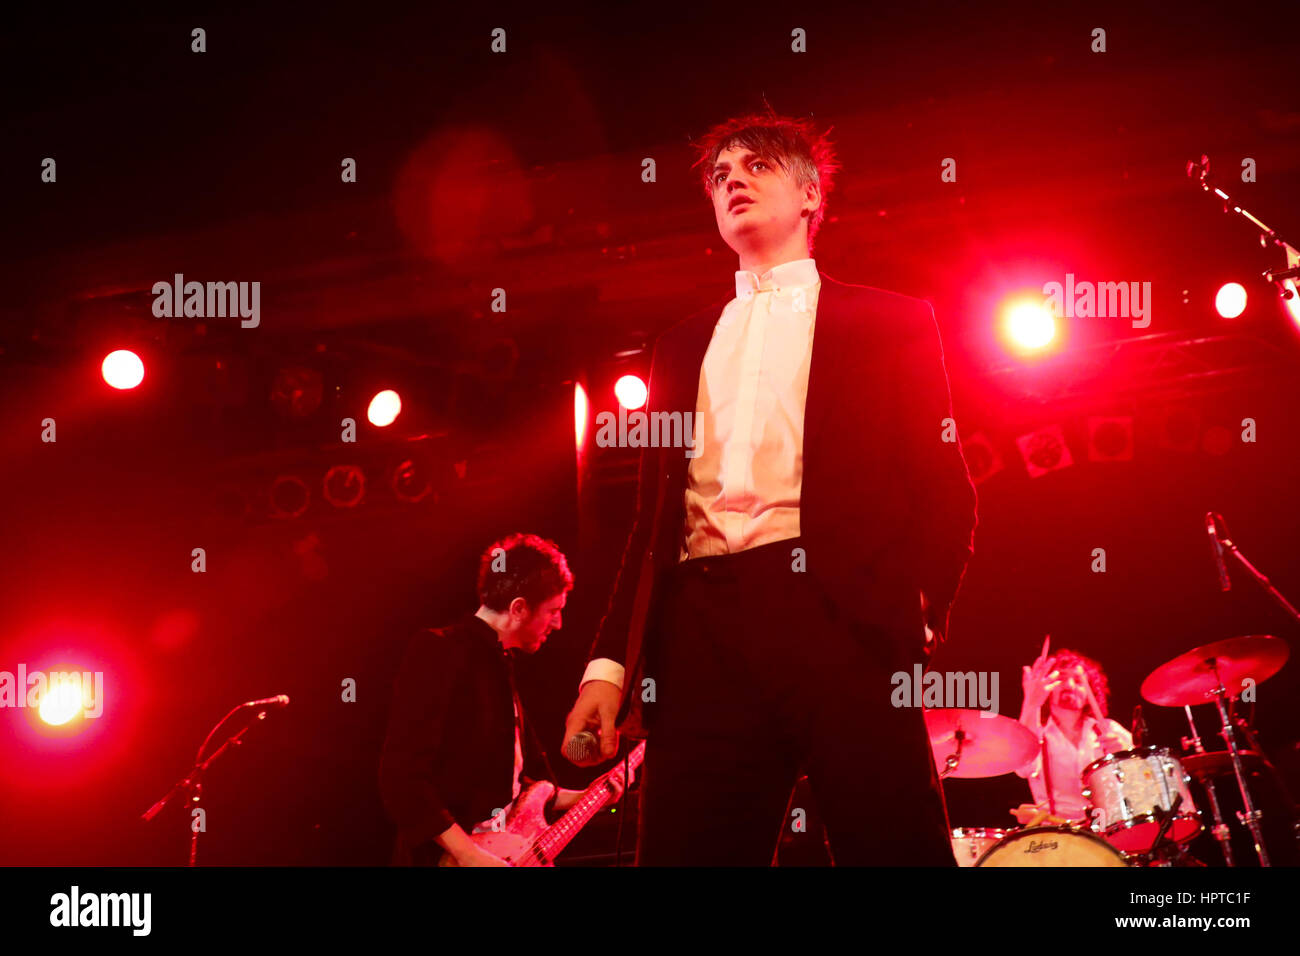 Hamburg, Deutschland. 24. Februar 2017. Britische Musiker Pete Doherty auf der Bühne während eines Konzerts in Hamburg, Deutschland, 24. Februar 2017. Doherty veröffentlicht "Hamburg-Demonstrationen", ein Solo-Album aufgenommen im Dezember 2016 in der Stadt. Foto: Christian Charisius/Dpa/Alamy Live News Stockfoto